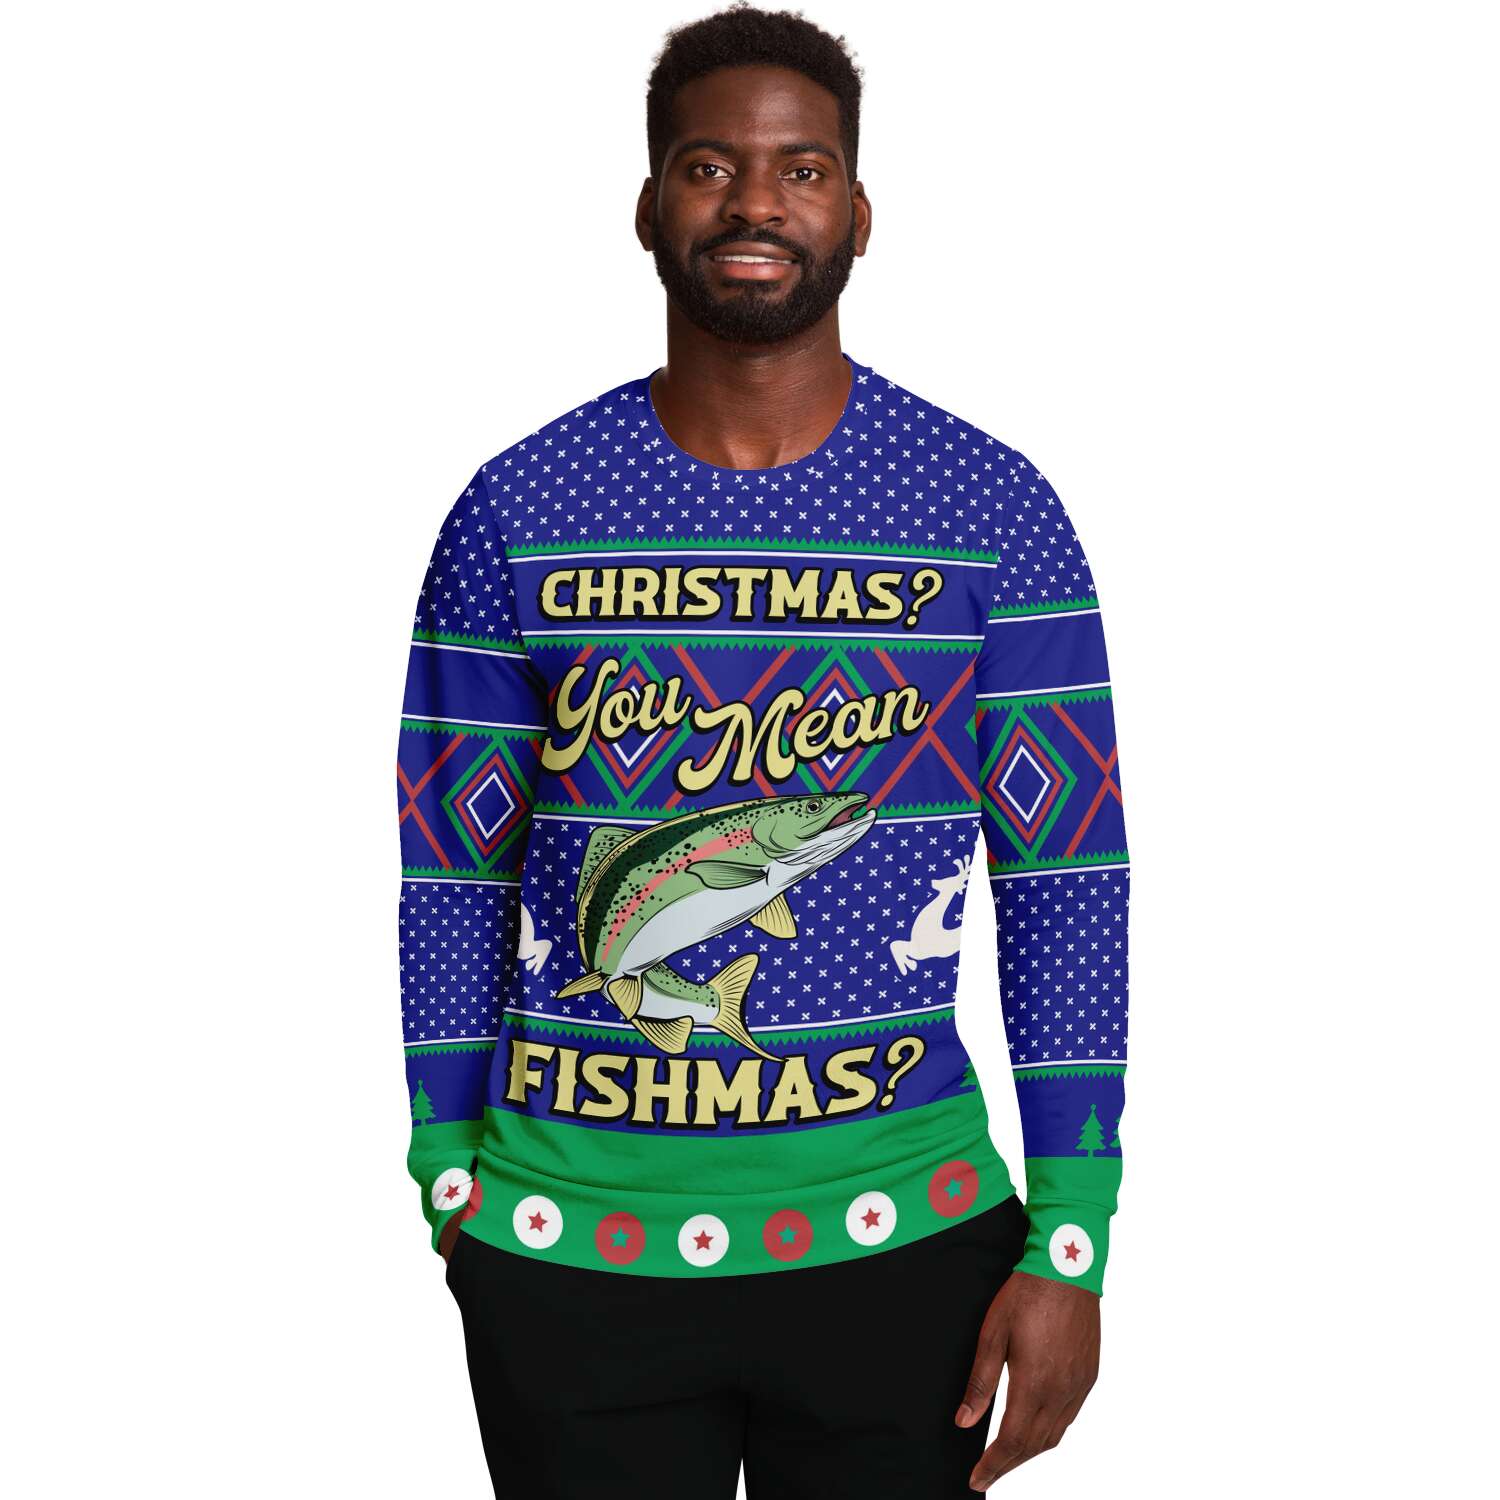 Merry Fishmas Sweatshirt | Unisex Ugly Christmas Sweater, Xmas Sweater, Holiday Sweater, Festive Sweater, Funny Sweater, Funny Party Shirt